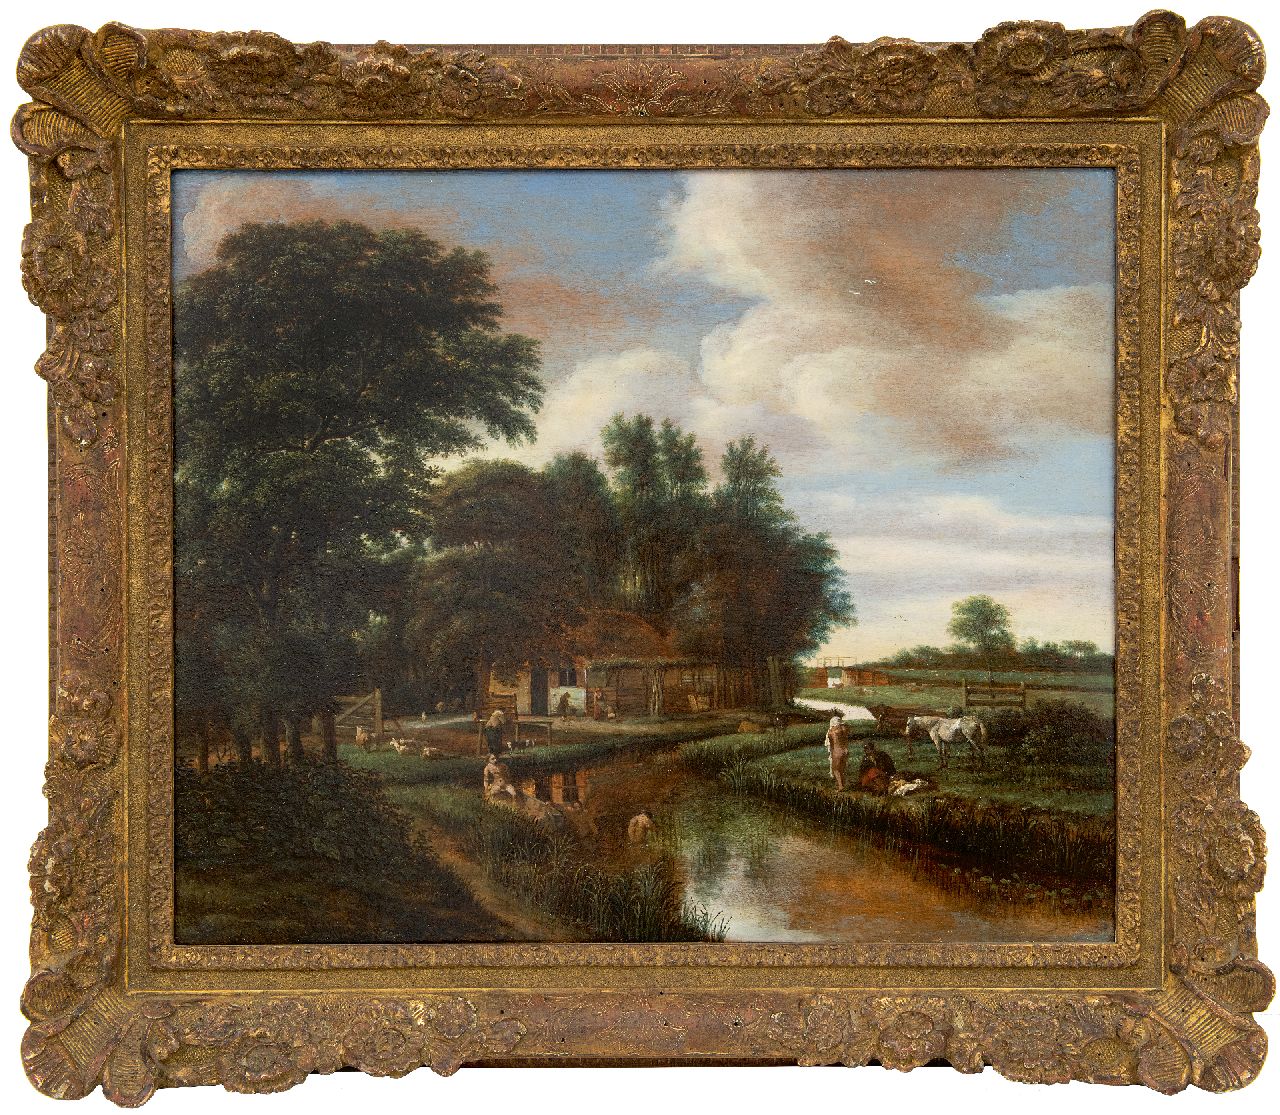 Asch P.J. van | 'Pieter' Jansz. van Asch | Schilderijen te koop aangeboden | Baders in een landschap, olieverf op paneel 42,0 x 51,5 cm, gesigneerd linksonder met monogram